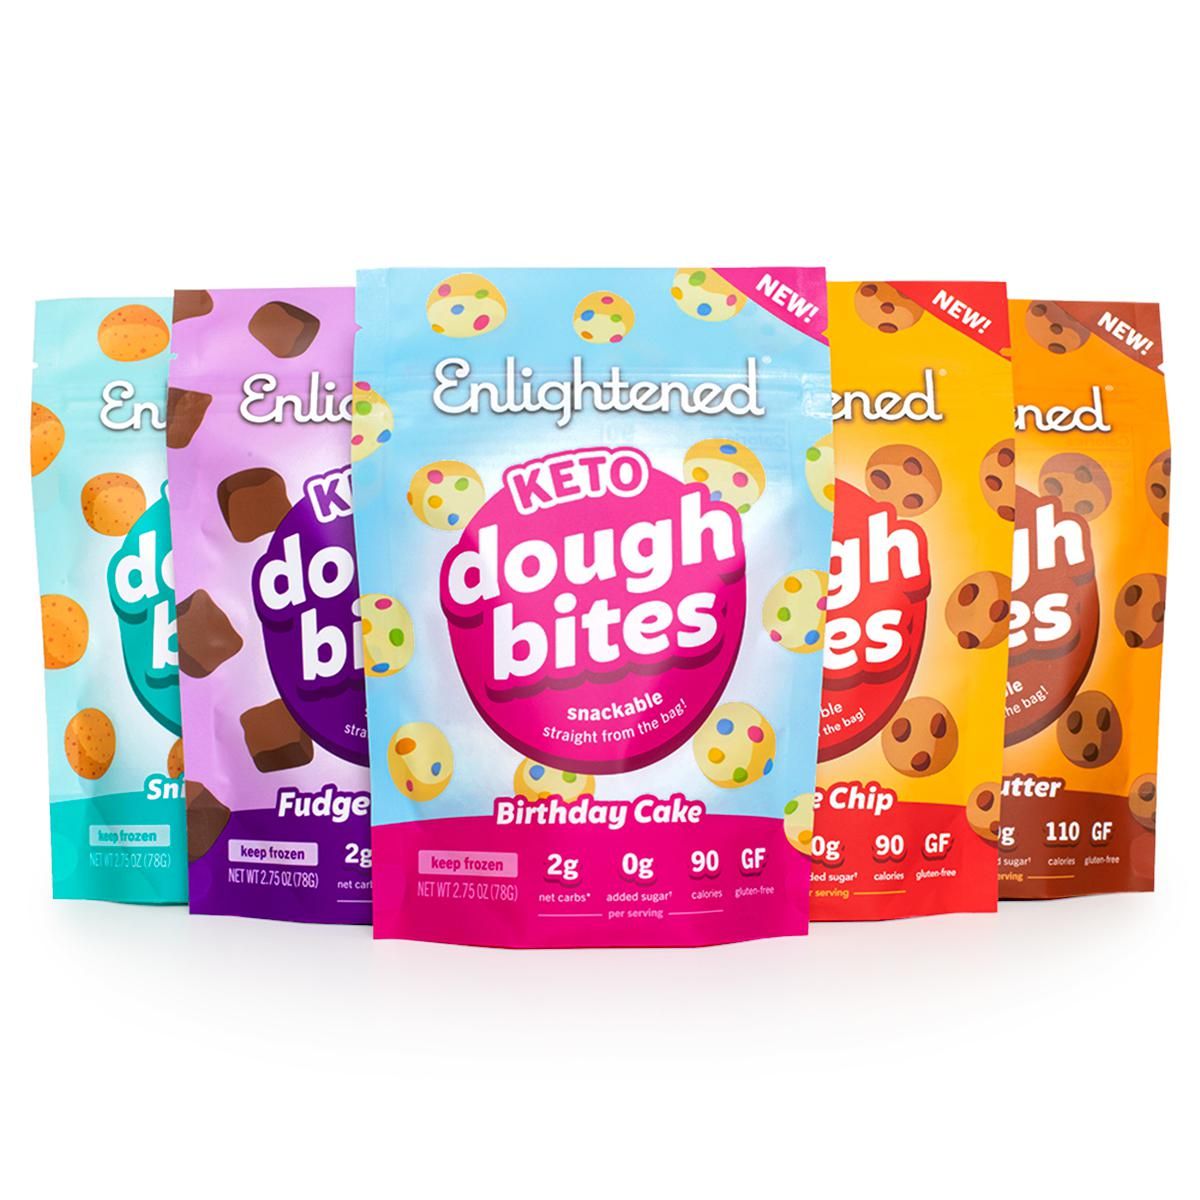 enlightened dough bites variety pack